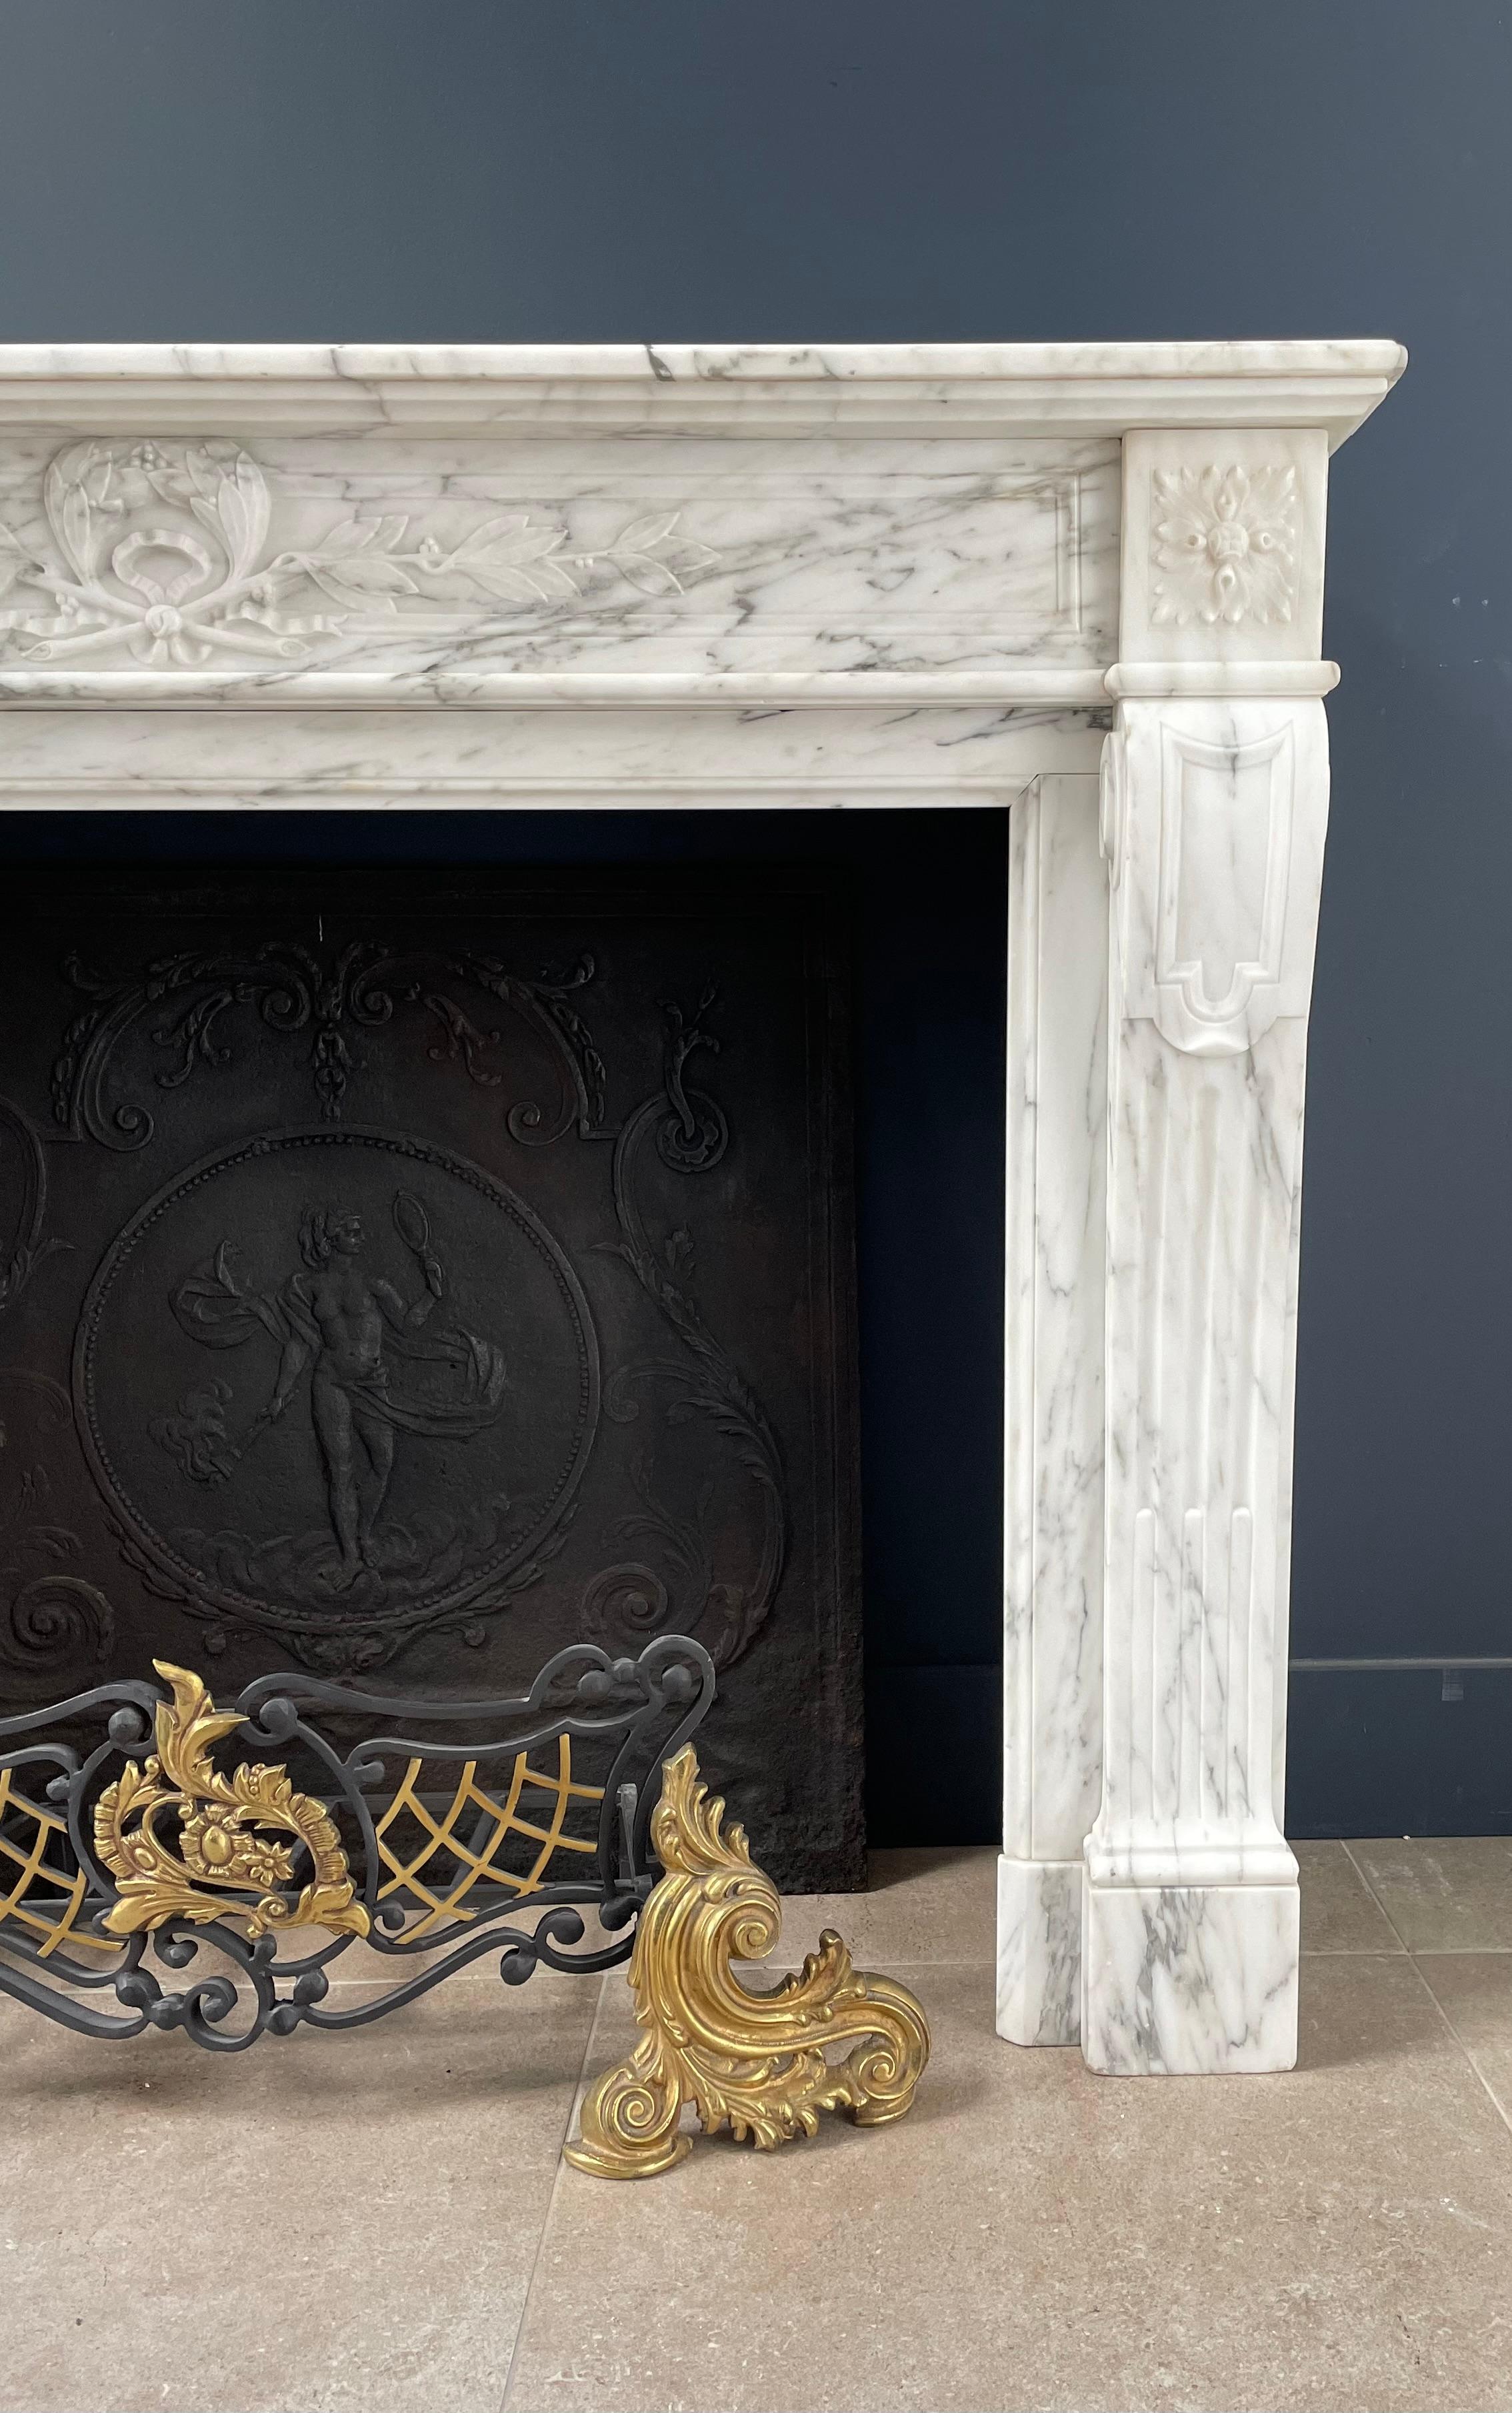 Erleben Sie die exquisite Schönheit unseres antiken französischen Kamins, der sorgfältig aus elegantem Arabescato-Marmor gefertigt wurde und Ihrem Raum einen Hauch von zeitlosem Charme verleiht.

Tauchen Sie ein in die Faszination dieses Kamins,